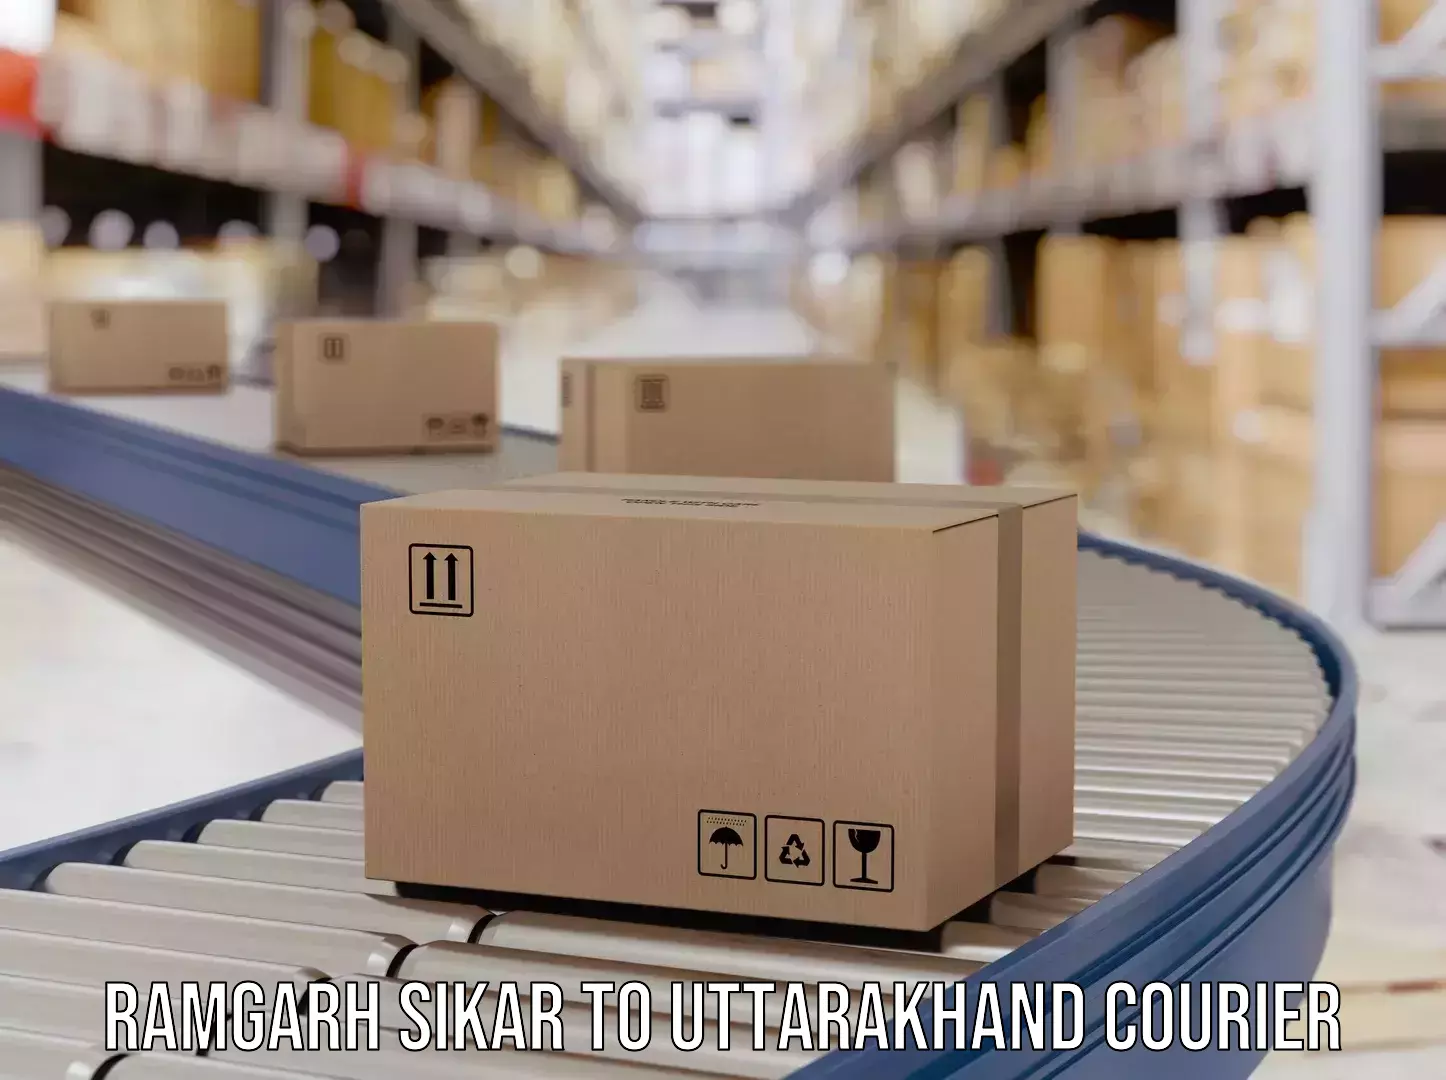 Innovative logistics solutions Ramgarh Sikar to Ramnagar